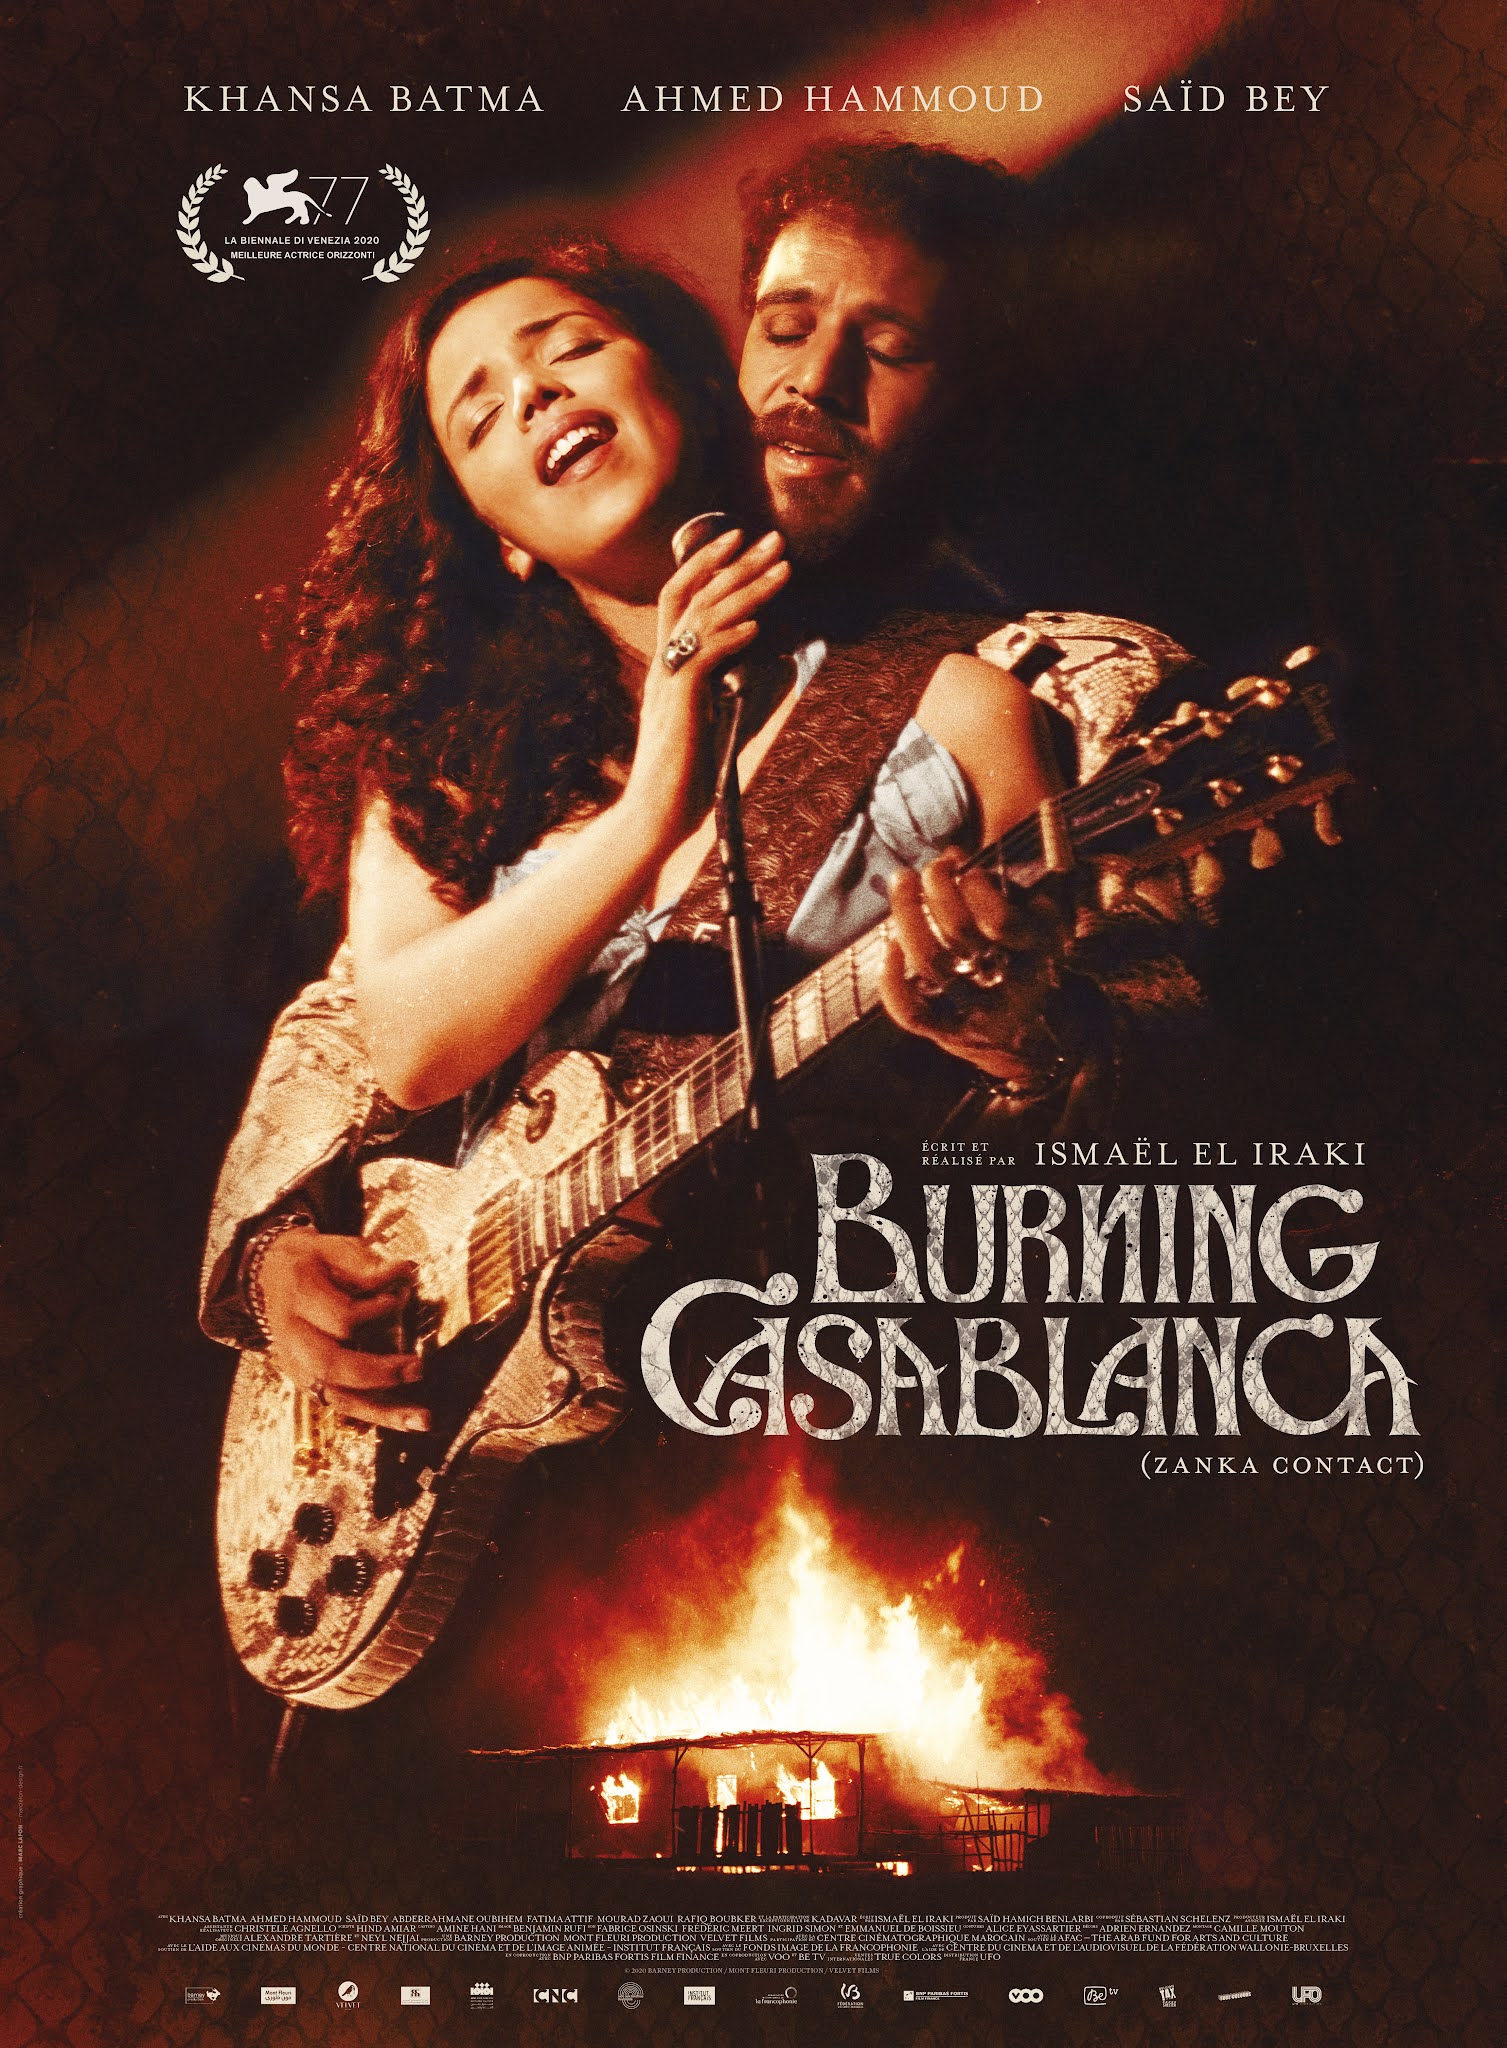 Burning Casablanca